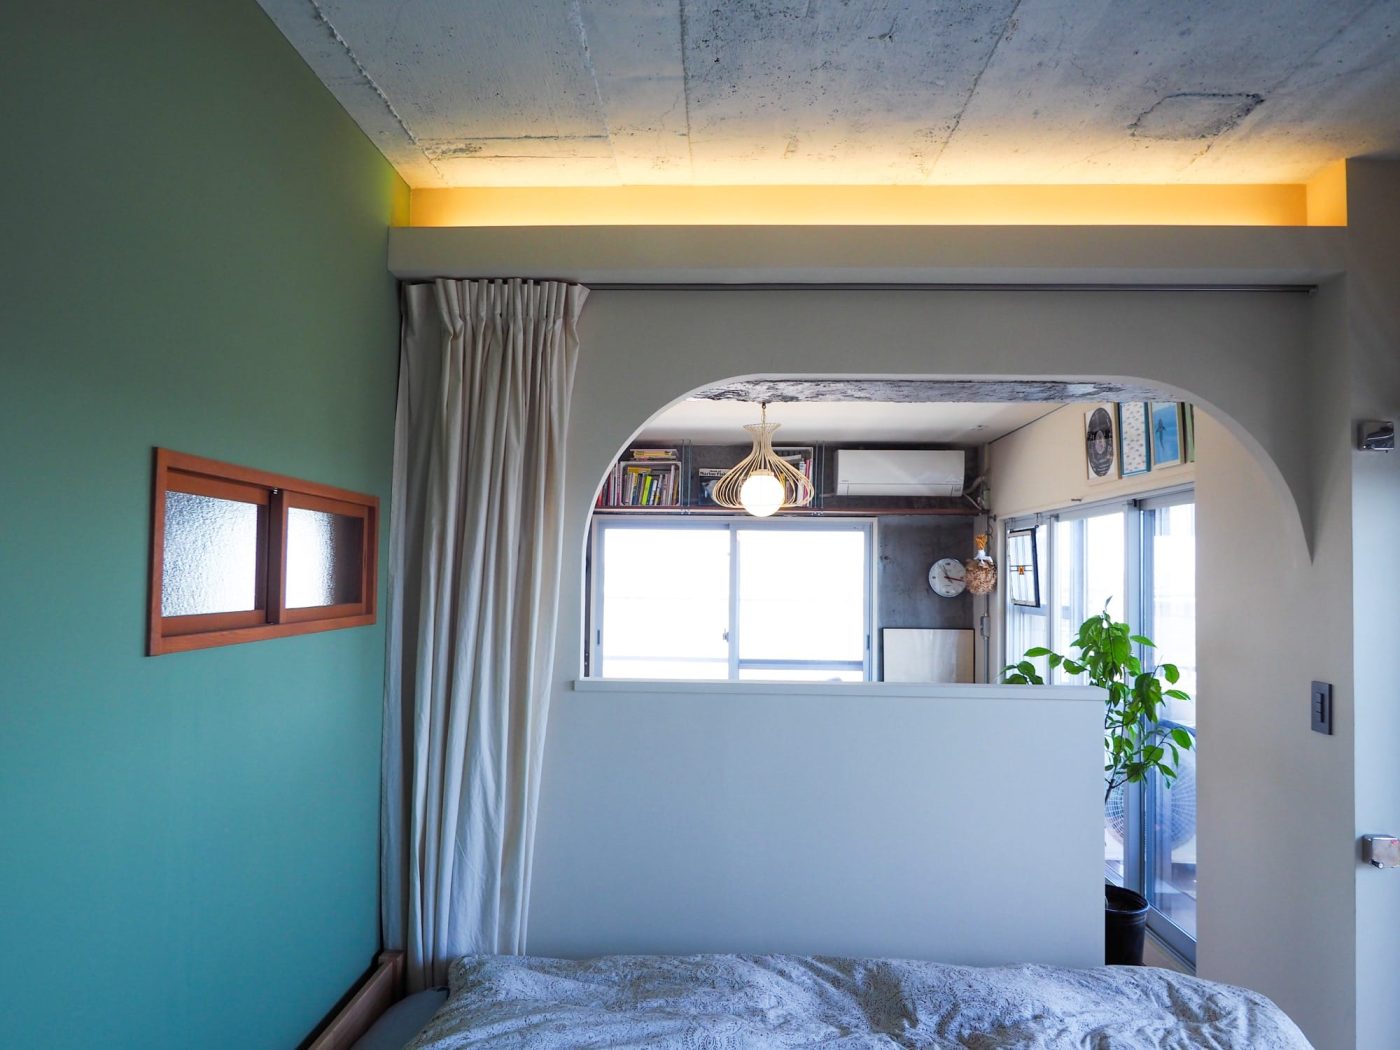 グリーンの壁が可愛らしい寝室。アーチの先がリビングです。ニンニク型の照明がアイコニック。